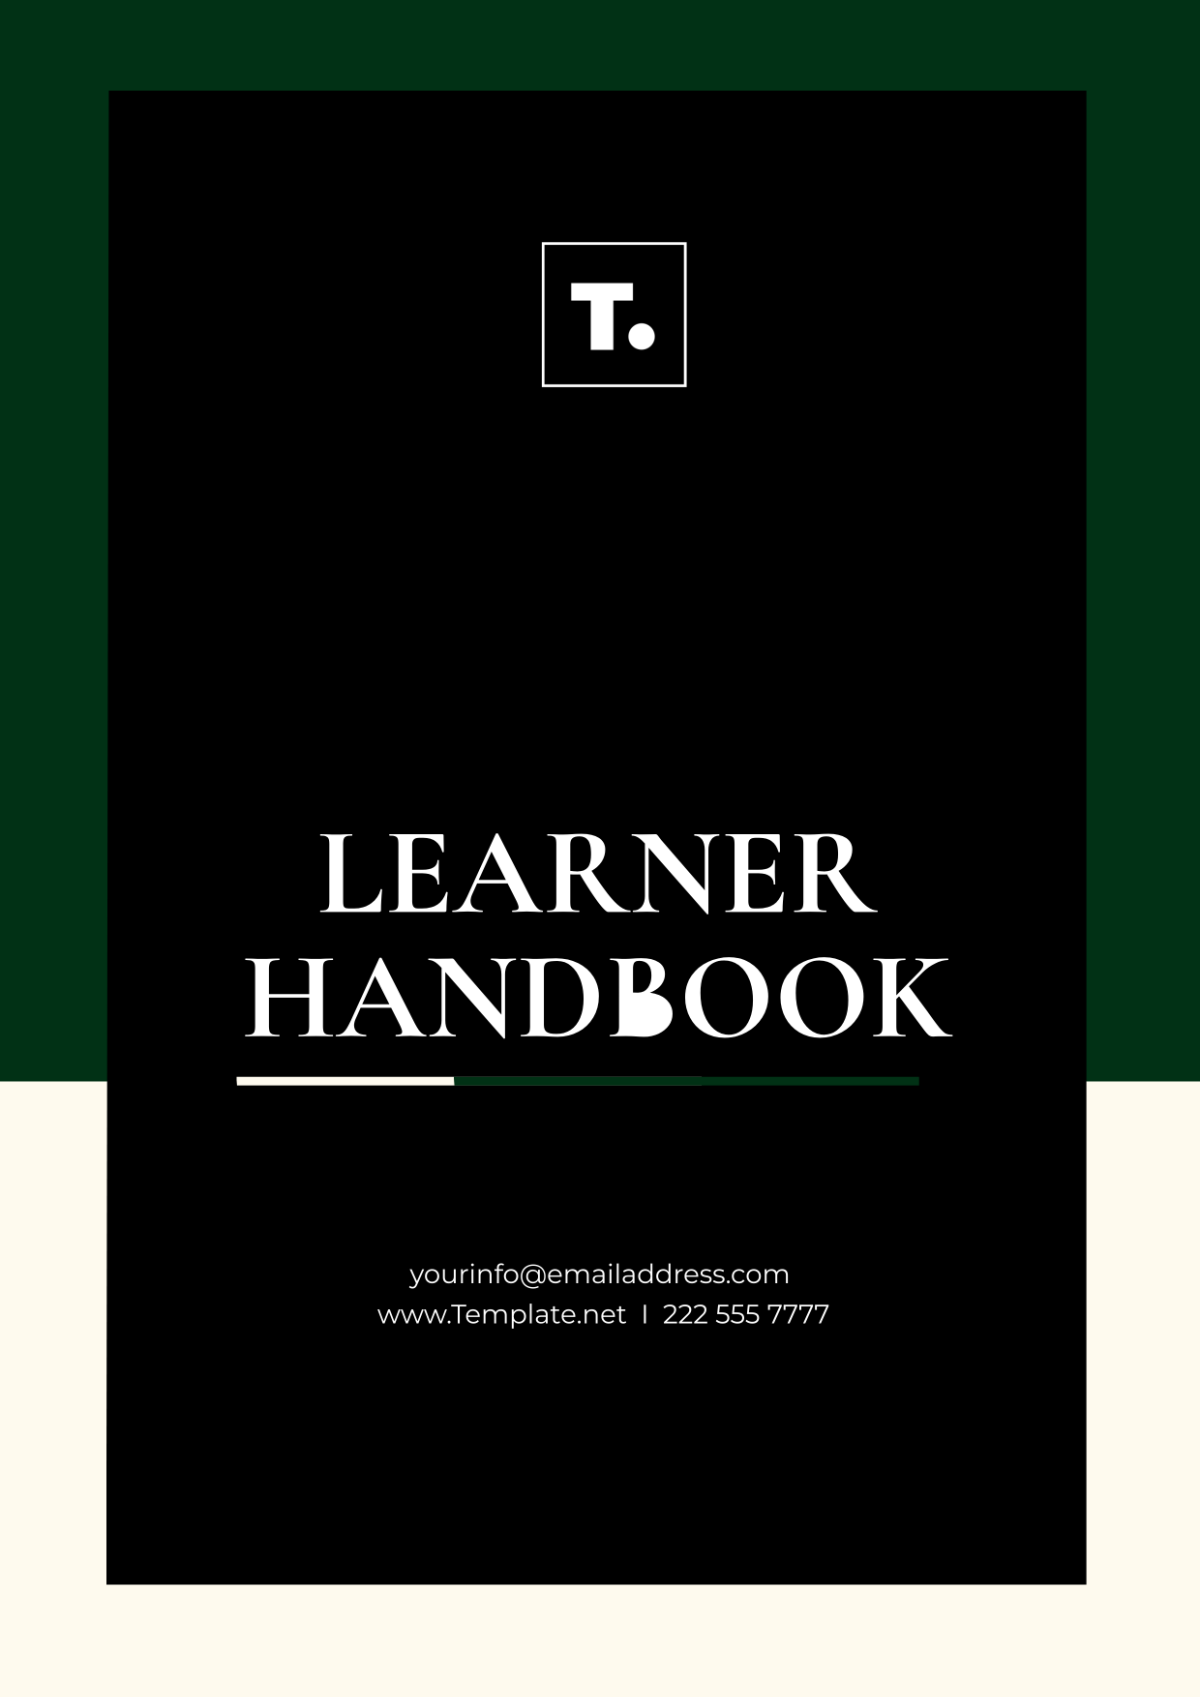 Free Learner Handbook Template